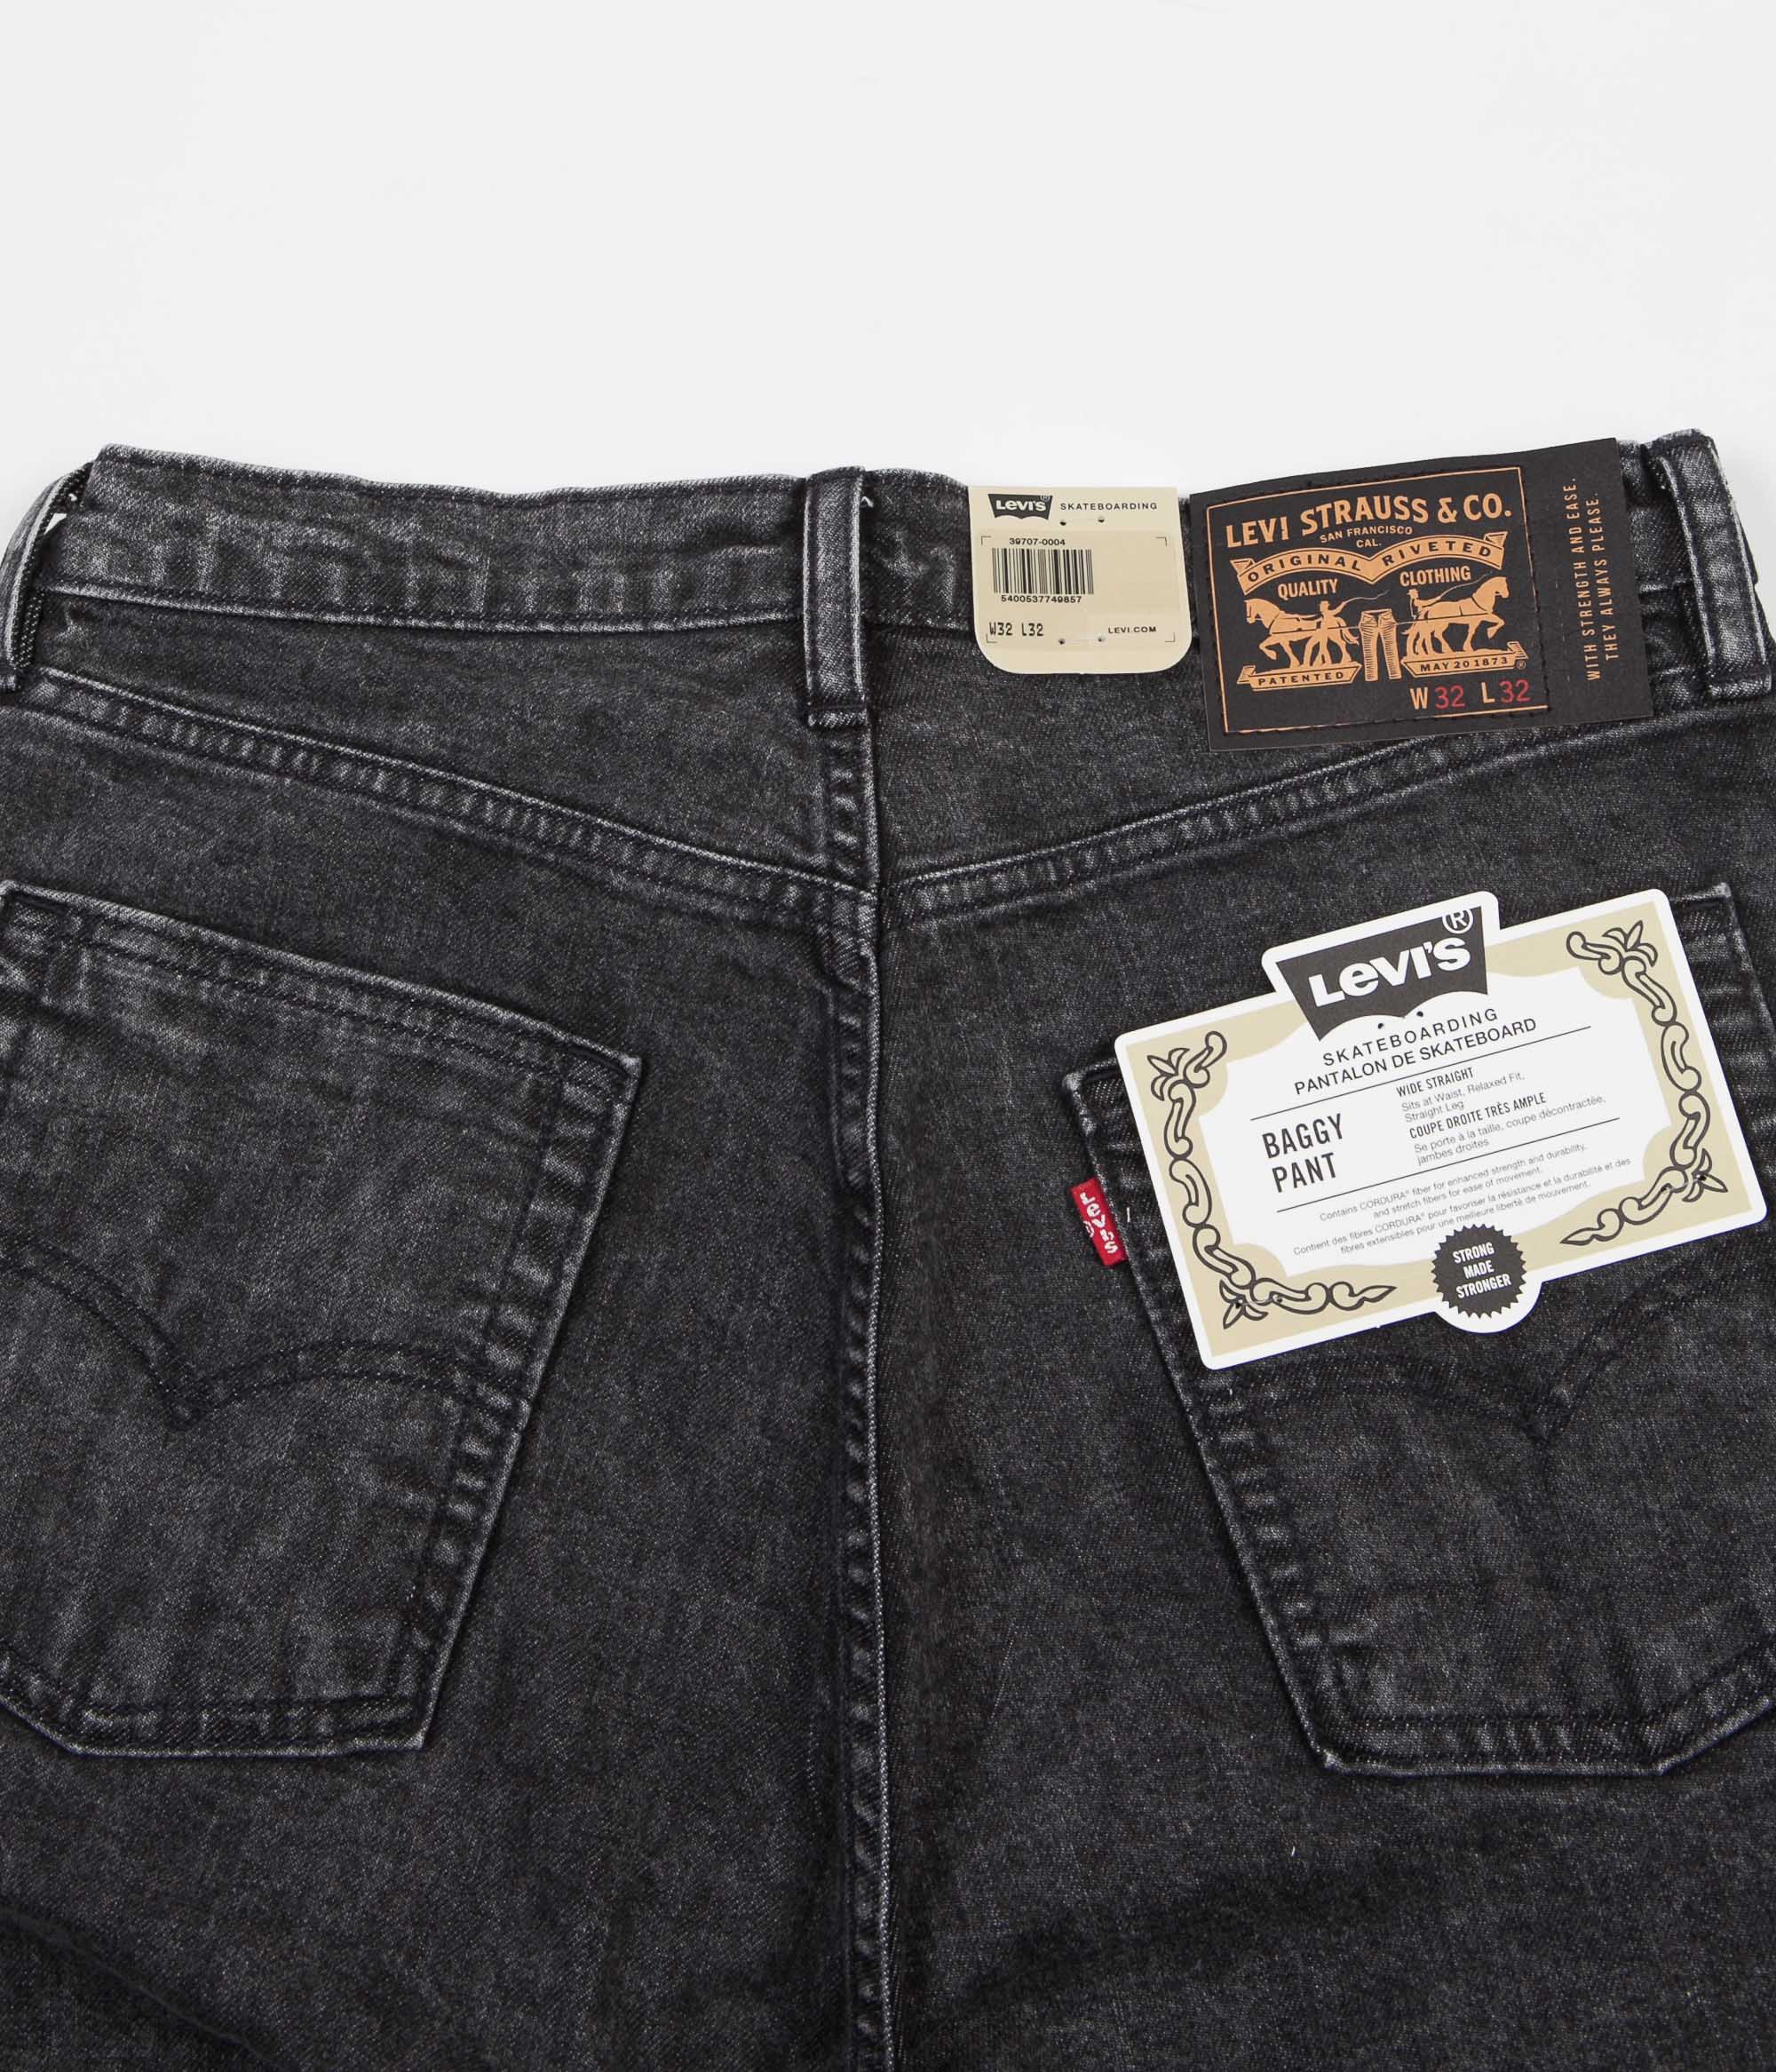 Levi'så¨ Skate Baggy 5 Pocket Jeans - Highland | Flatspot